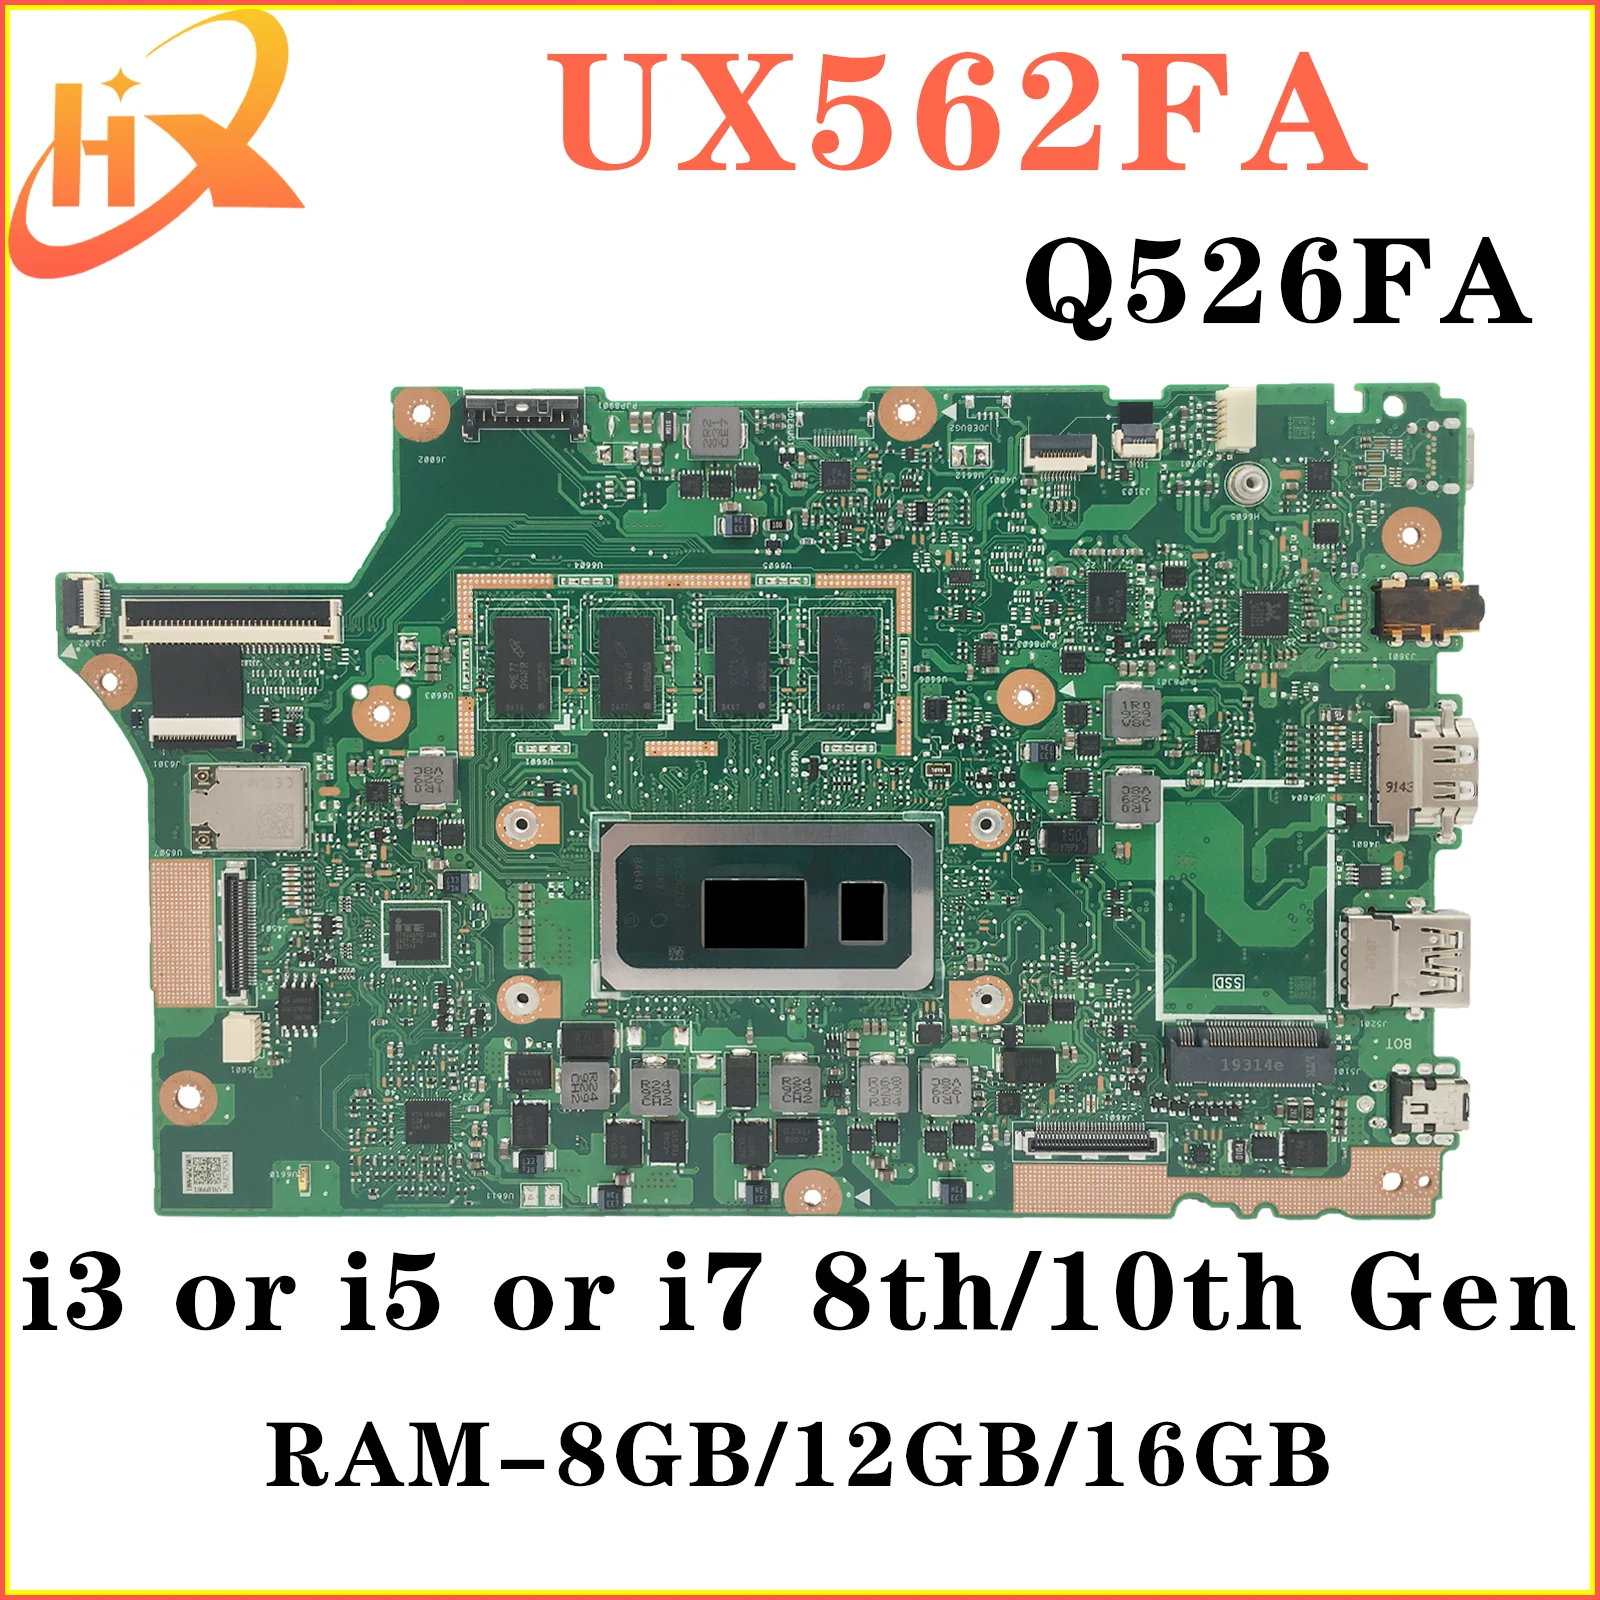 UX562FAC Материнская плата ASUS UX562FA UX562F Q526FA Q526FAC Q526F материнская плата для ноутбука i5 i7 8/10-го поколения RAM-8GB/12GB/16GB материнская плата kefu для hp 13 ad tpn i128 материнская плата для ноутбука i3 i5 i7 8 го поколения ram 4gb 8 гб 939647 601 6050a2923901